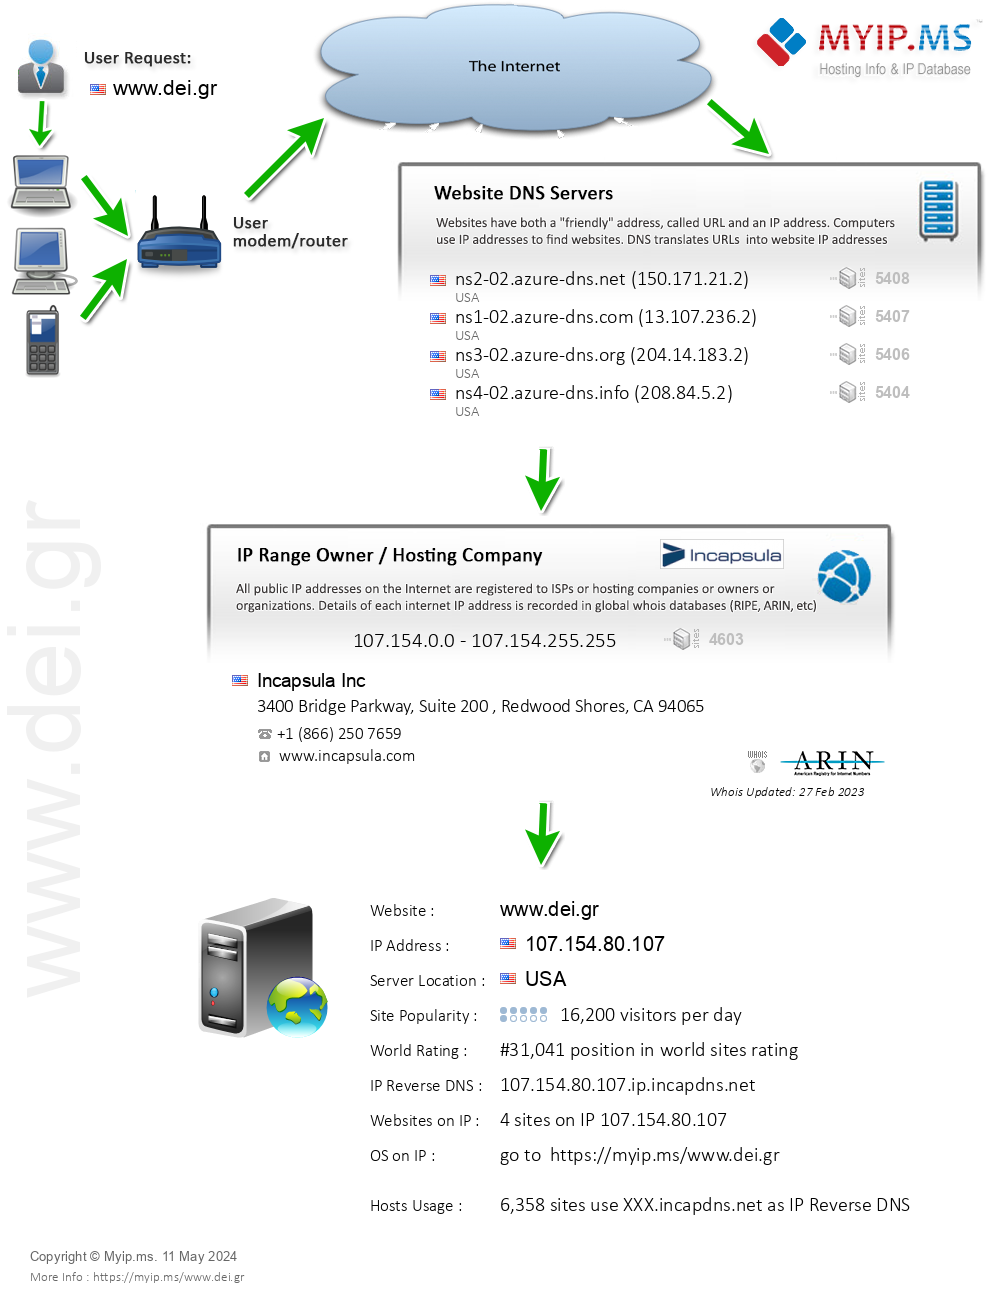 Dei.gr - Website Hosting Visual IP Diagram